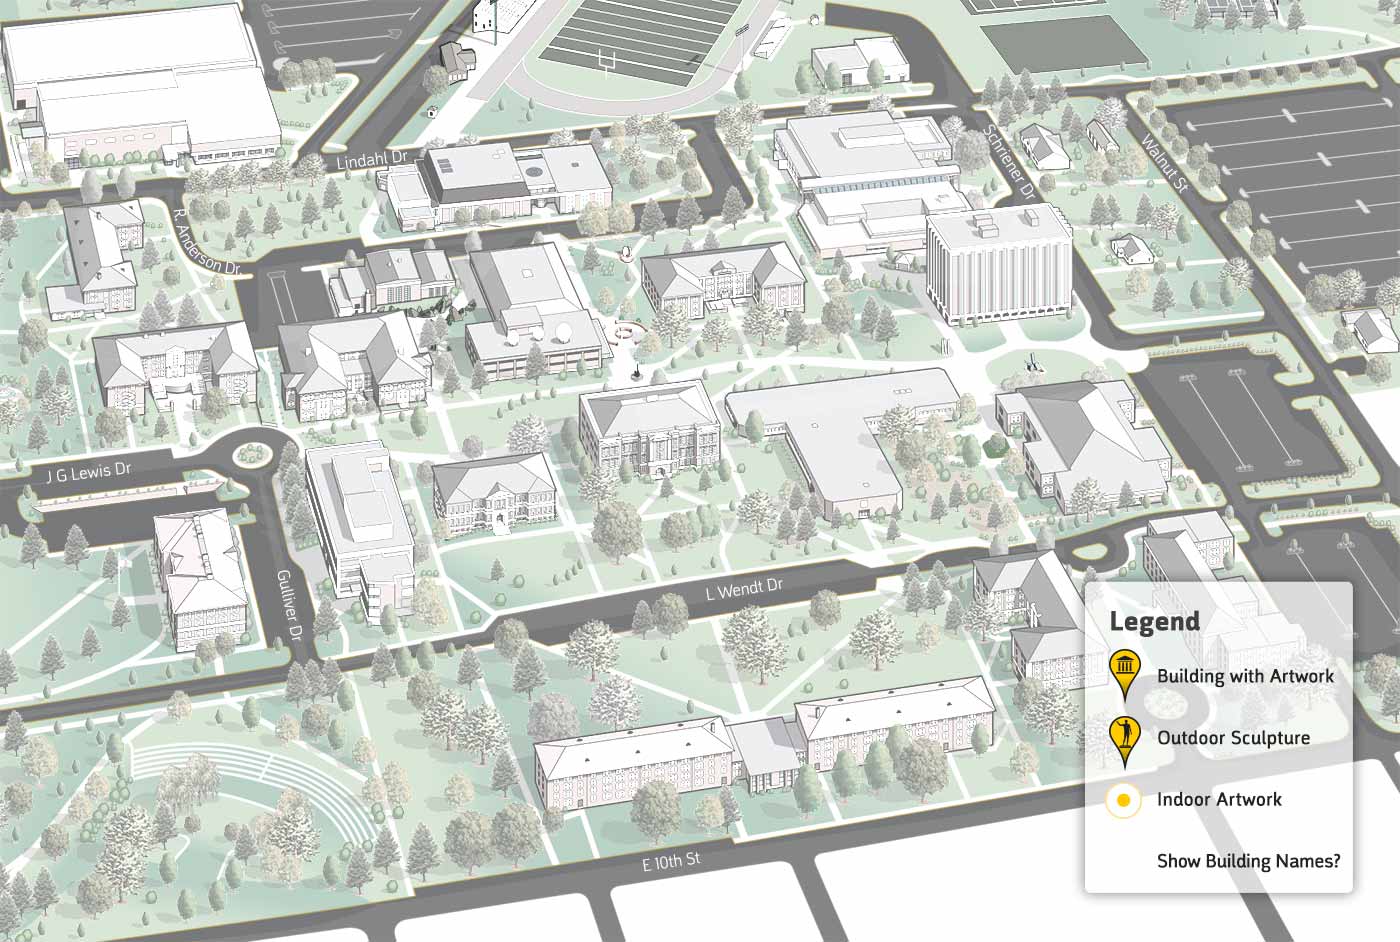 pratt institute campus map